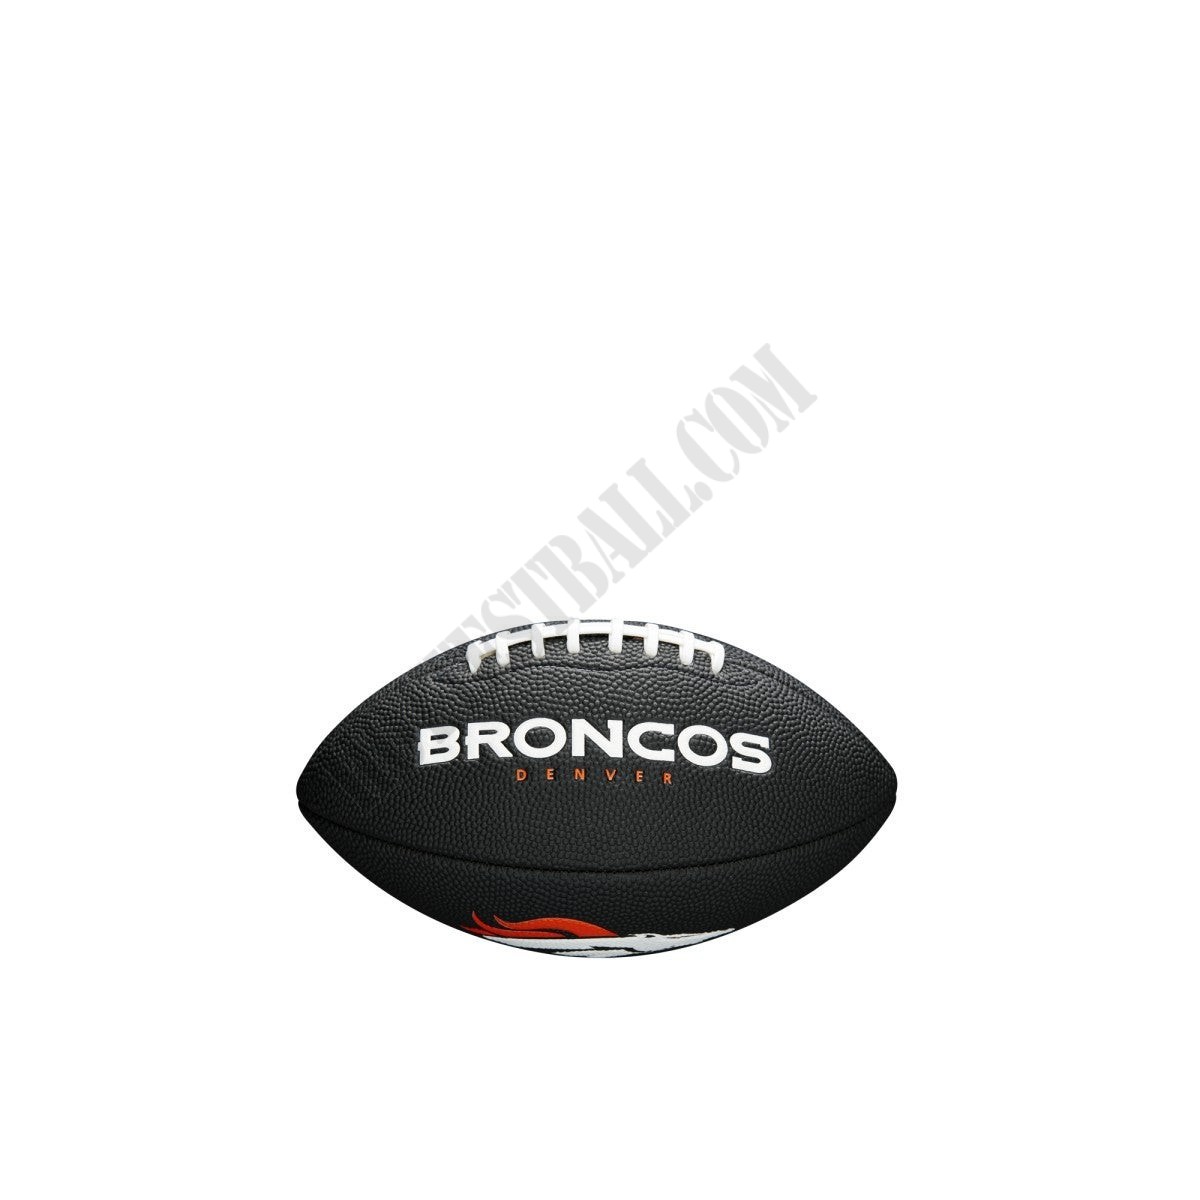 NFL Team Logo Mini Football - Denver Broncos ● Wilson Promotions - NFL Team Logo Mini Football - Denver Broncos ● Wilson Promotions